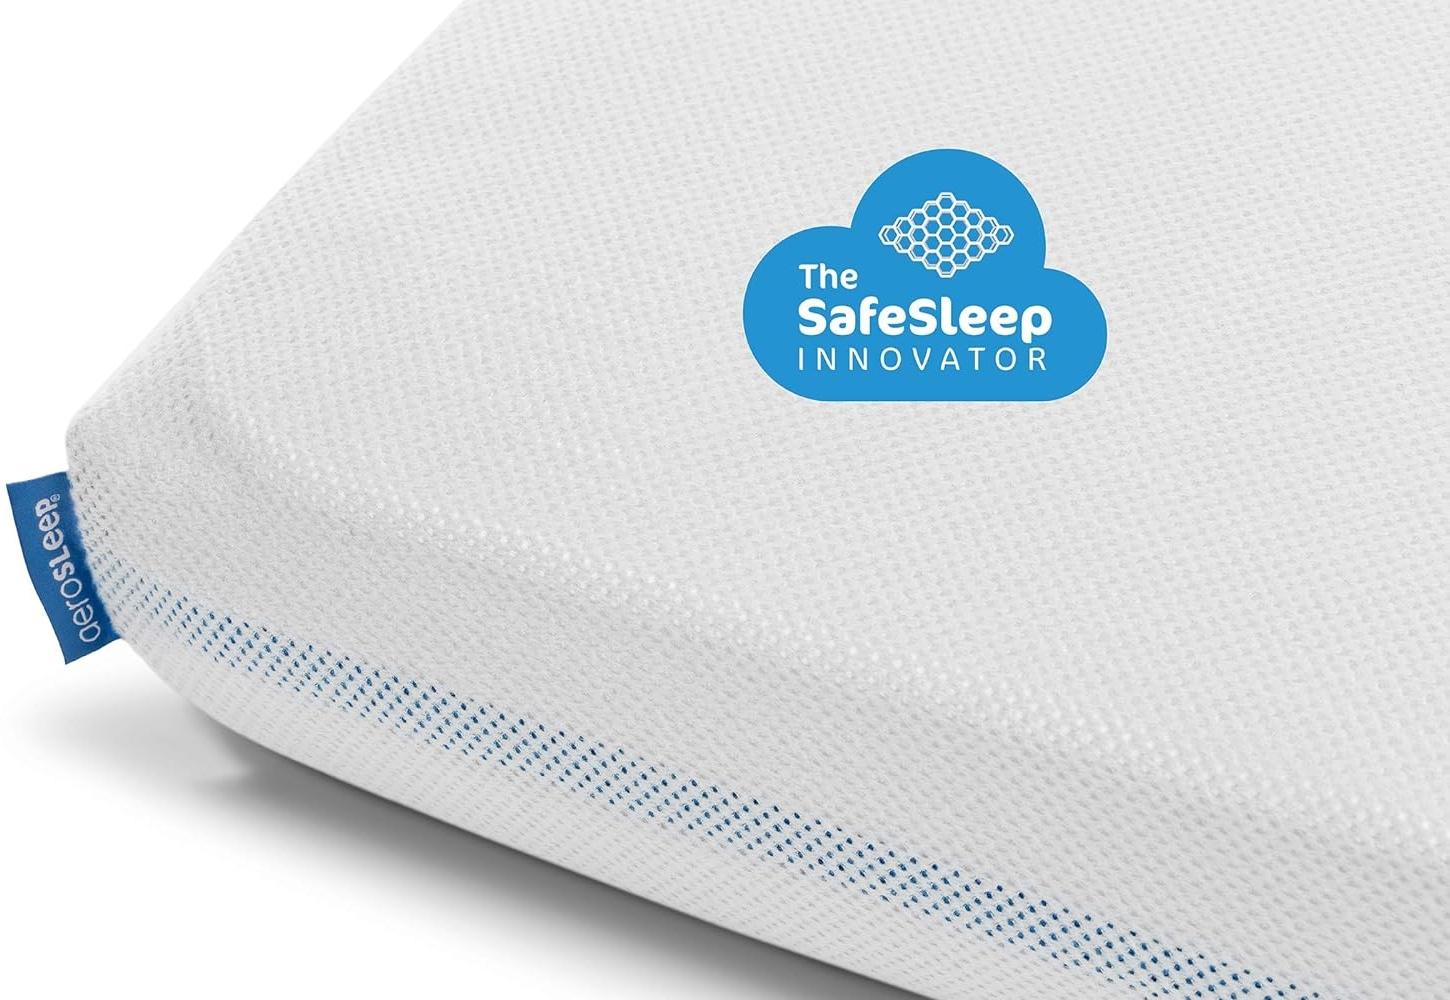 Aerosleep - SafeSleep Spannlaken Babybett - Optimale Atmung - Wärmeregulierung - Maschinenwaschbar - 83 x 50 cm - 100% PES - Weiß Bild 1